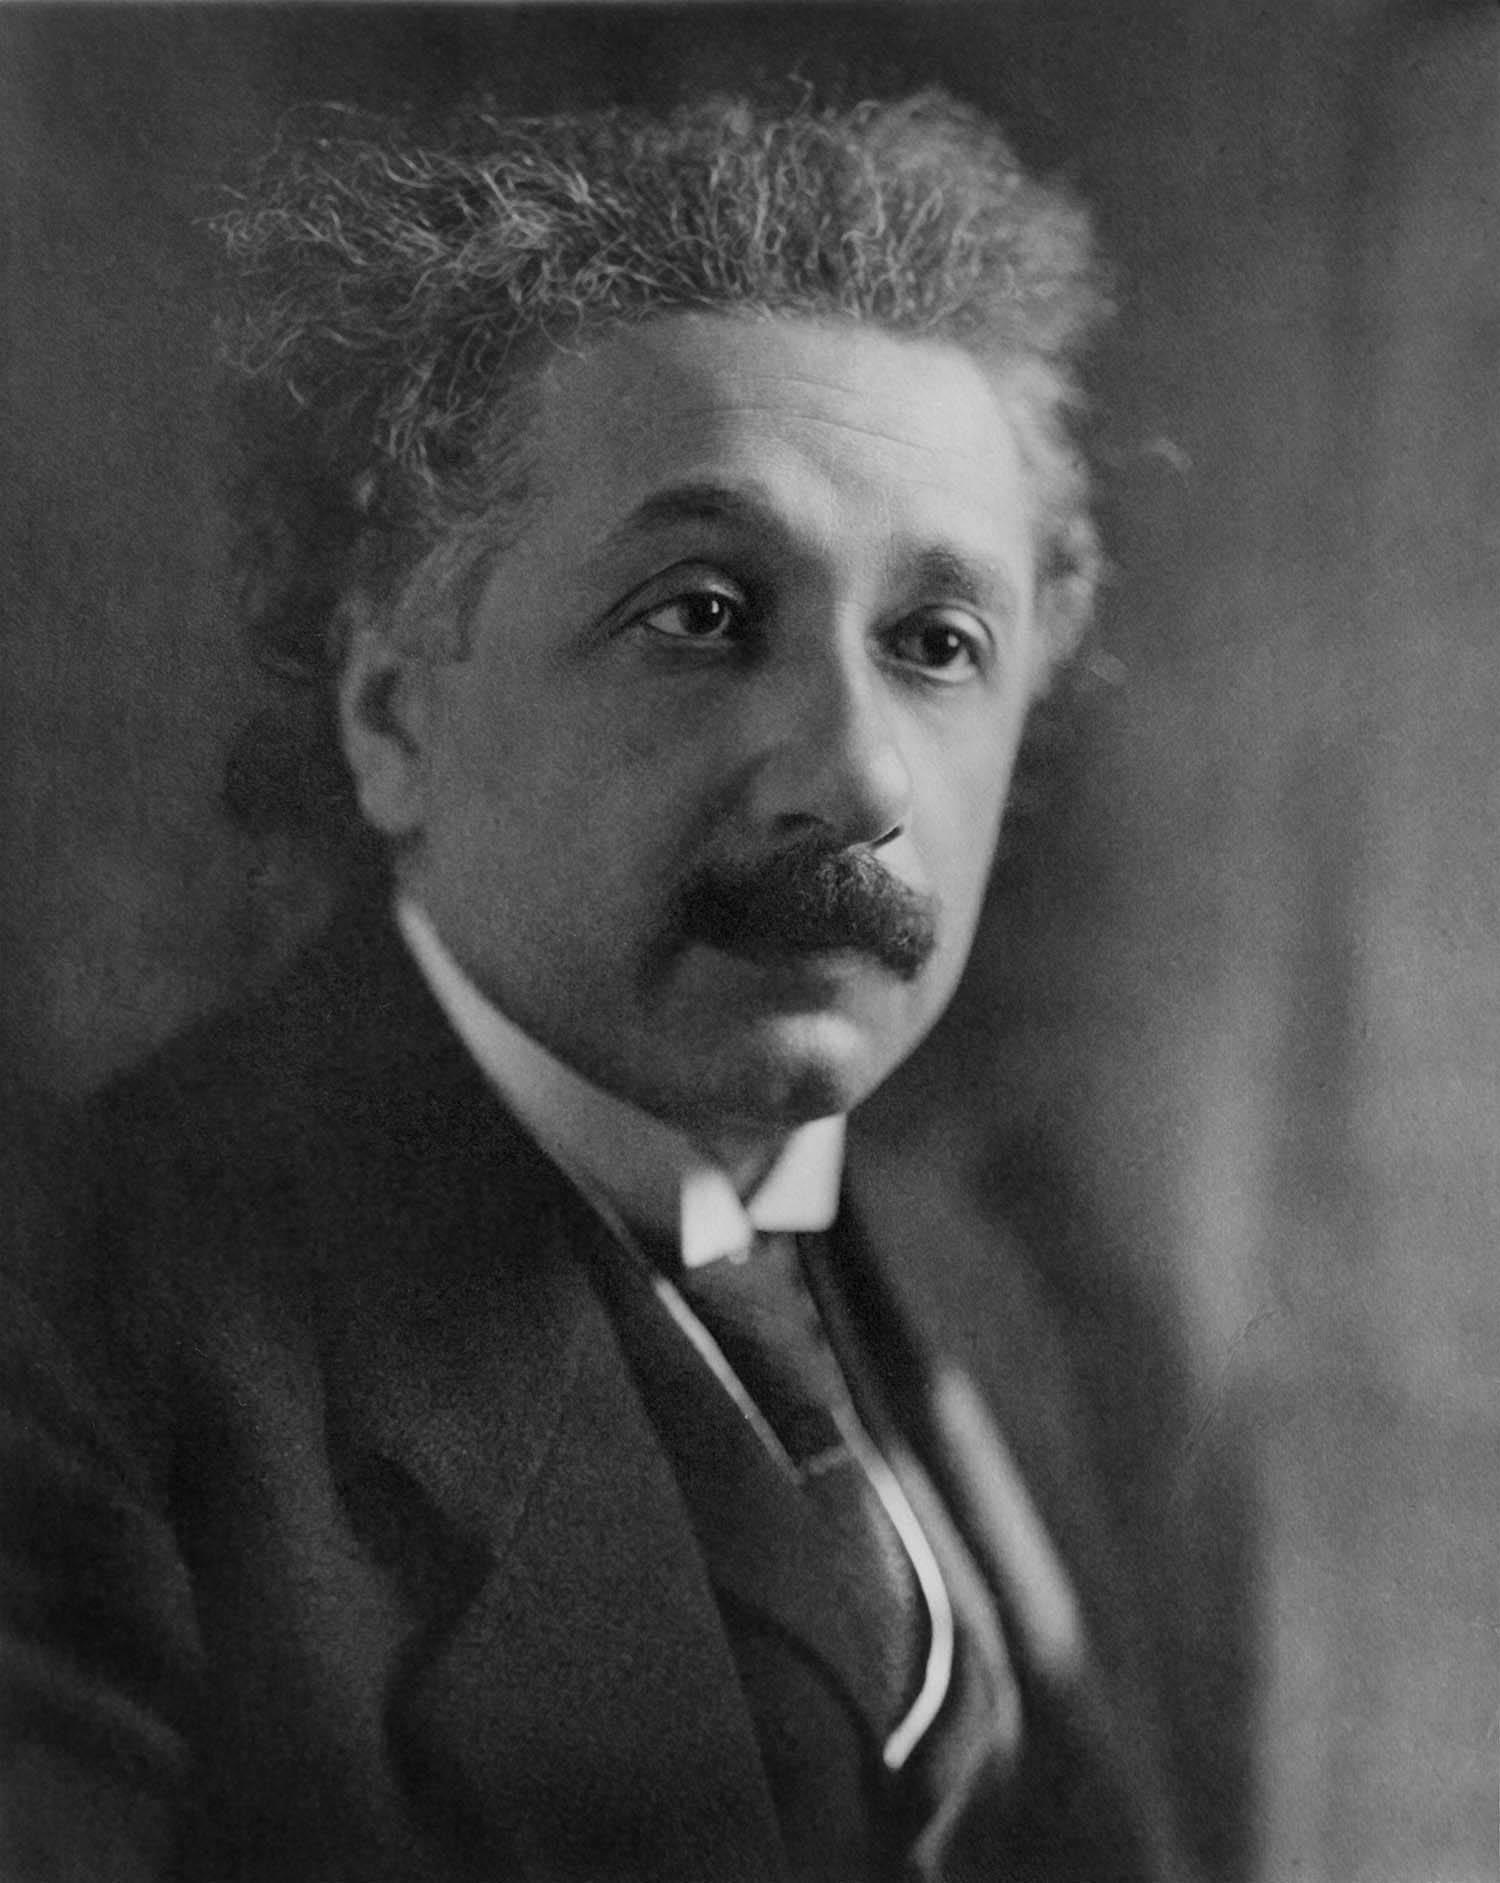 Unknown Portrait Photograph - Classical Portrait of Albert Einstein Fine Art Print